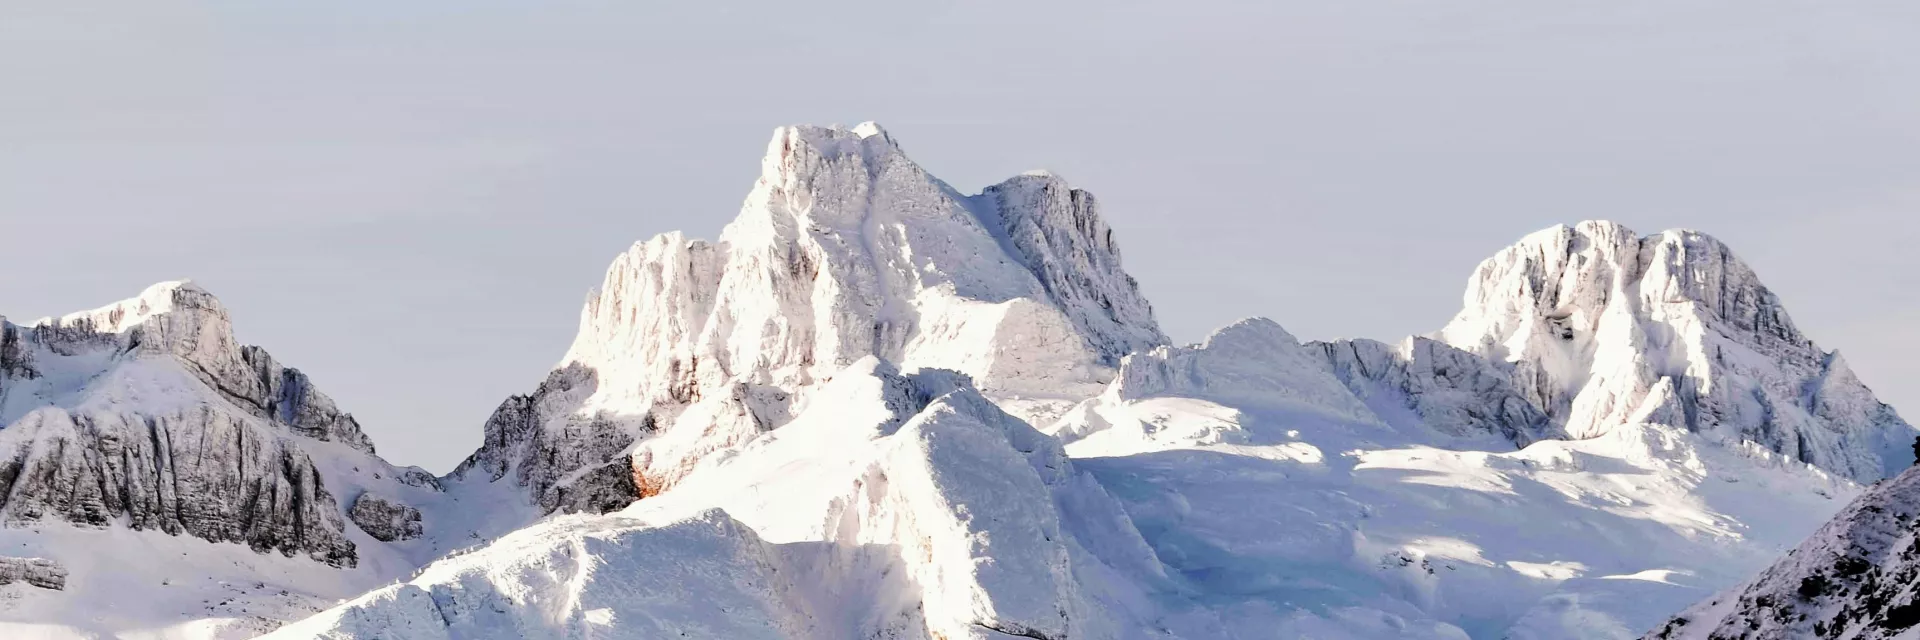 Pyrénées - montagnes - massifs montagneux - ski